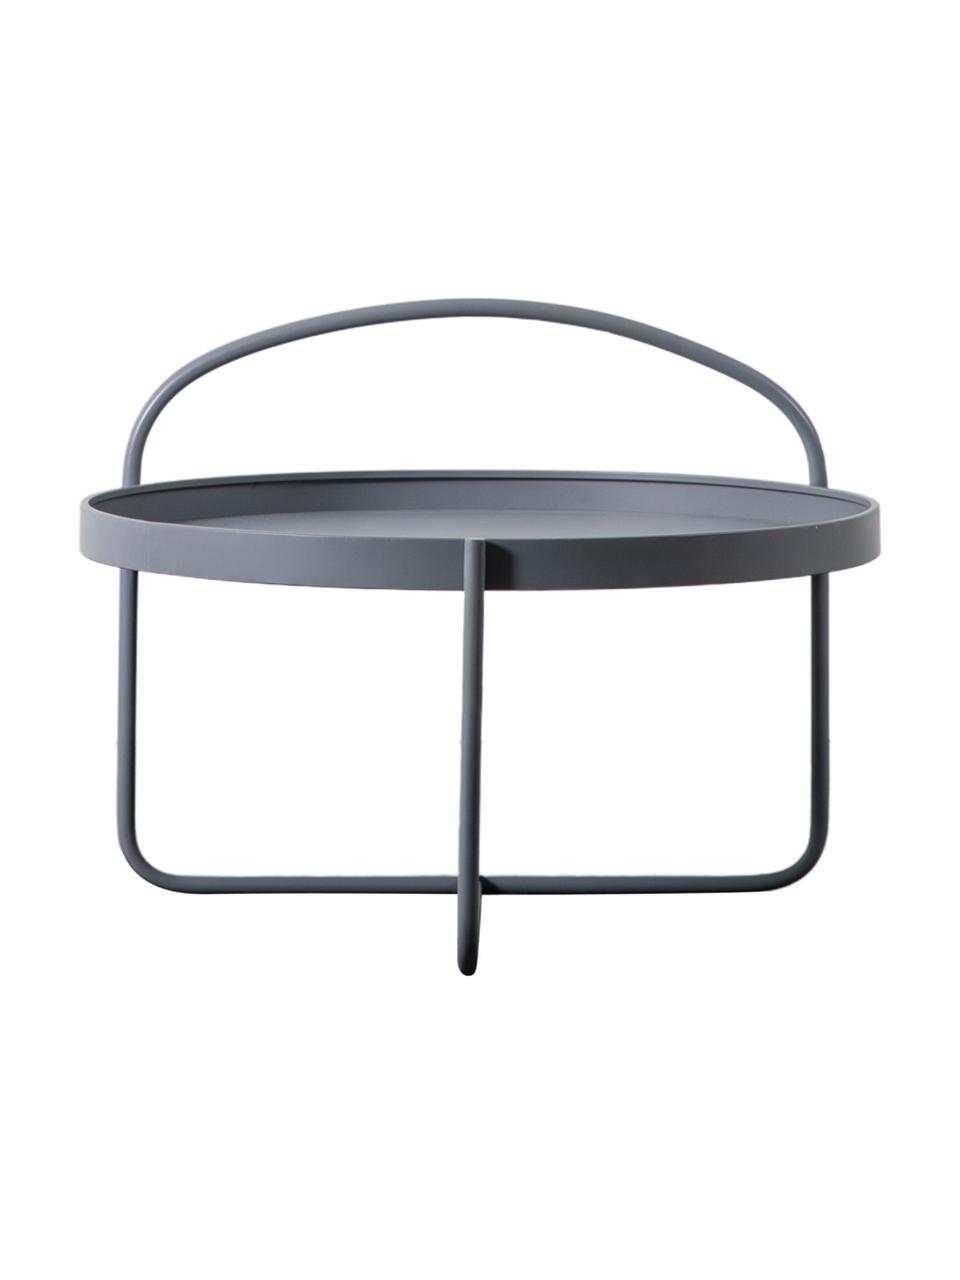 Kulatý konferenční stolek Melbury, Ocel s práškovým nástřikem, Šedá, Ø 65 cm, V 50 cm